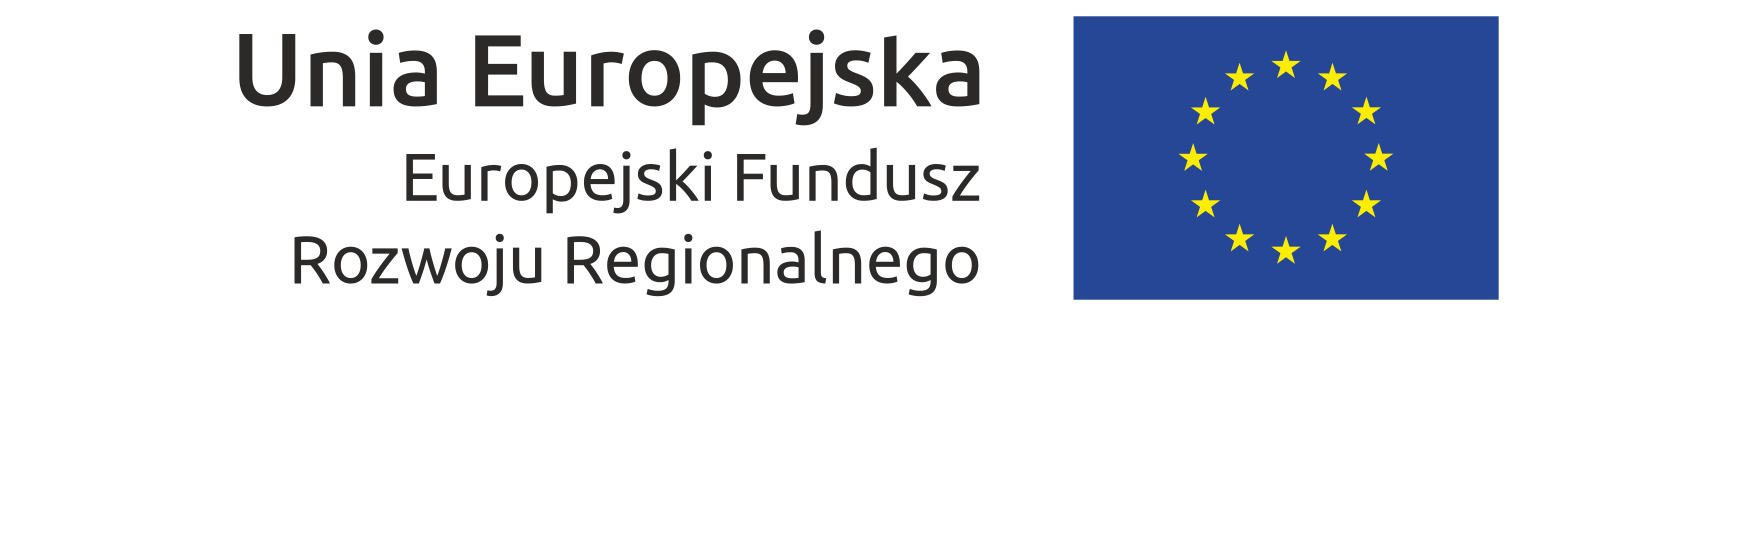 unia europejska europejski fundusz rozwoju regionalnego